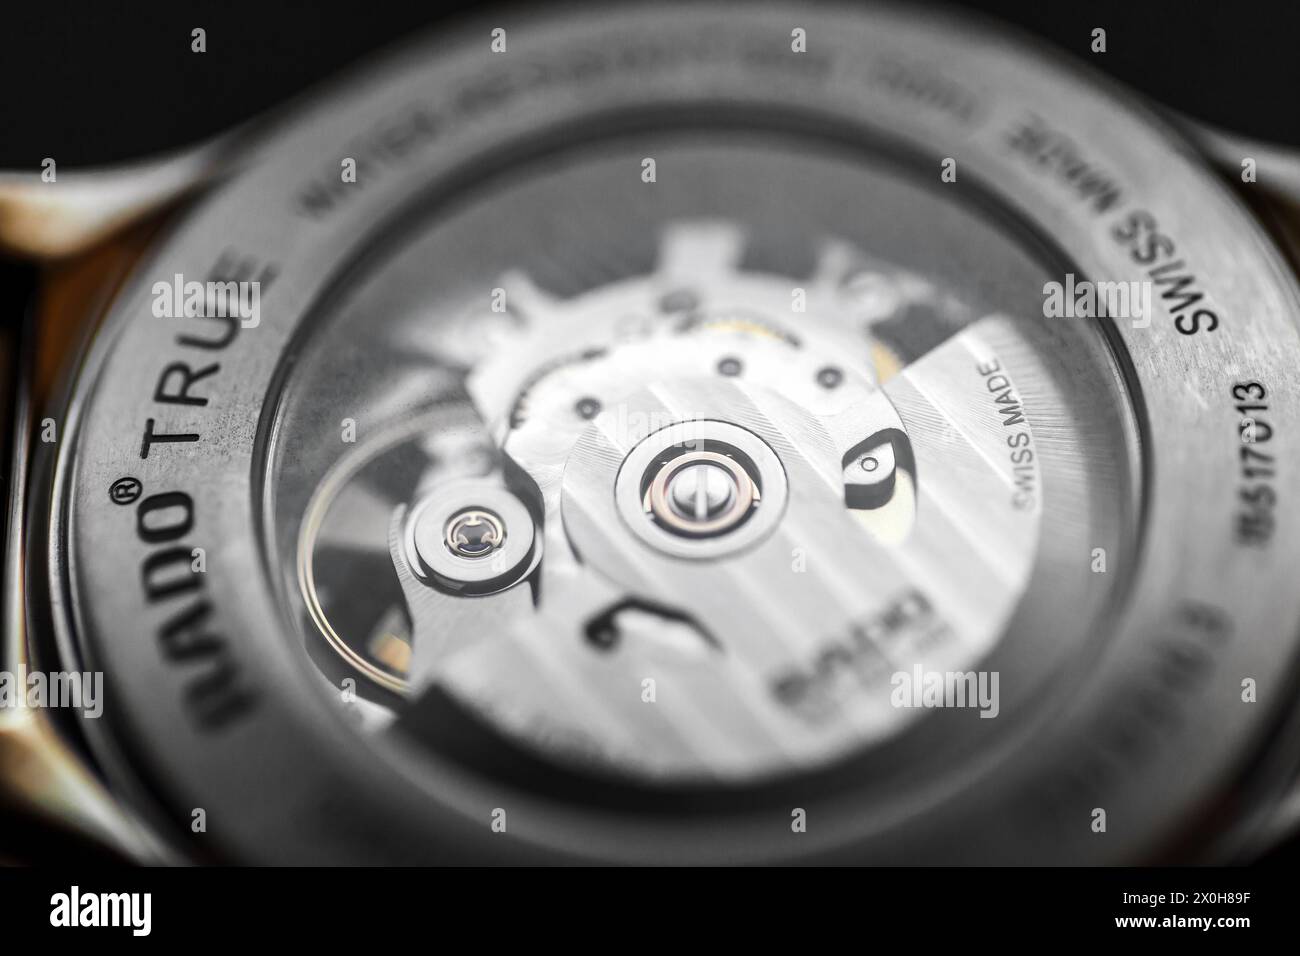 Lengnau, Suisse - 11 novembre 2021 : le mouvement de la montre est derrière le boîtier arrière transparent de la montre-bracelet mécanique à remontage automatique suisse Rado Automati Banque D'Images